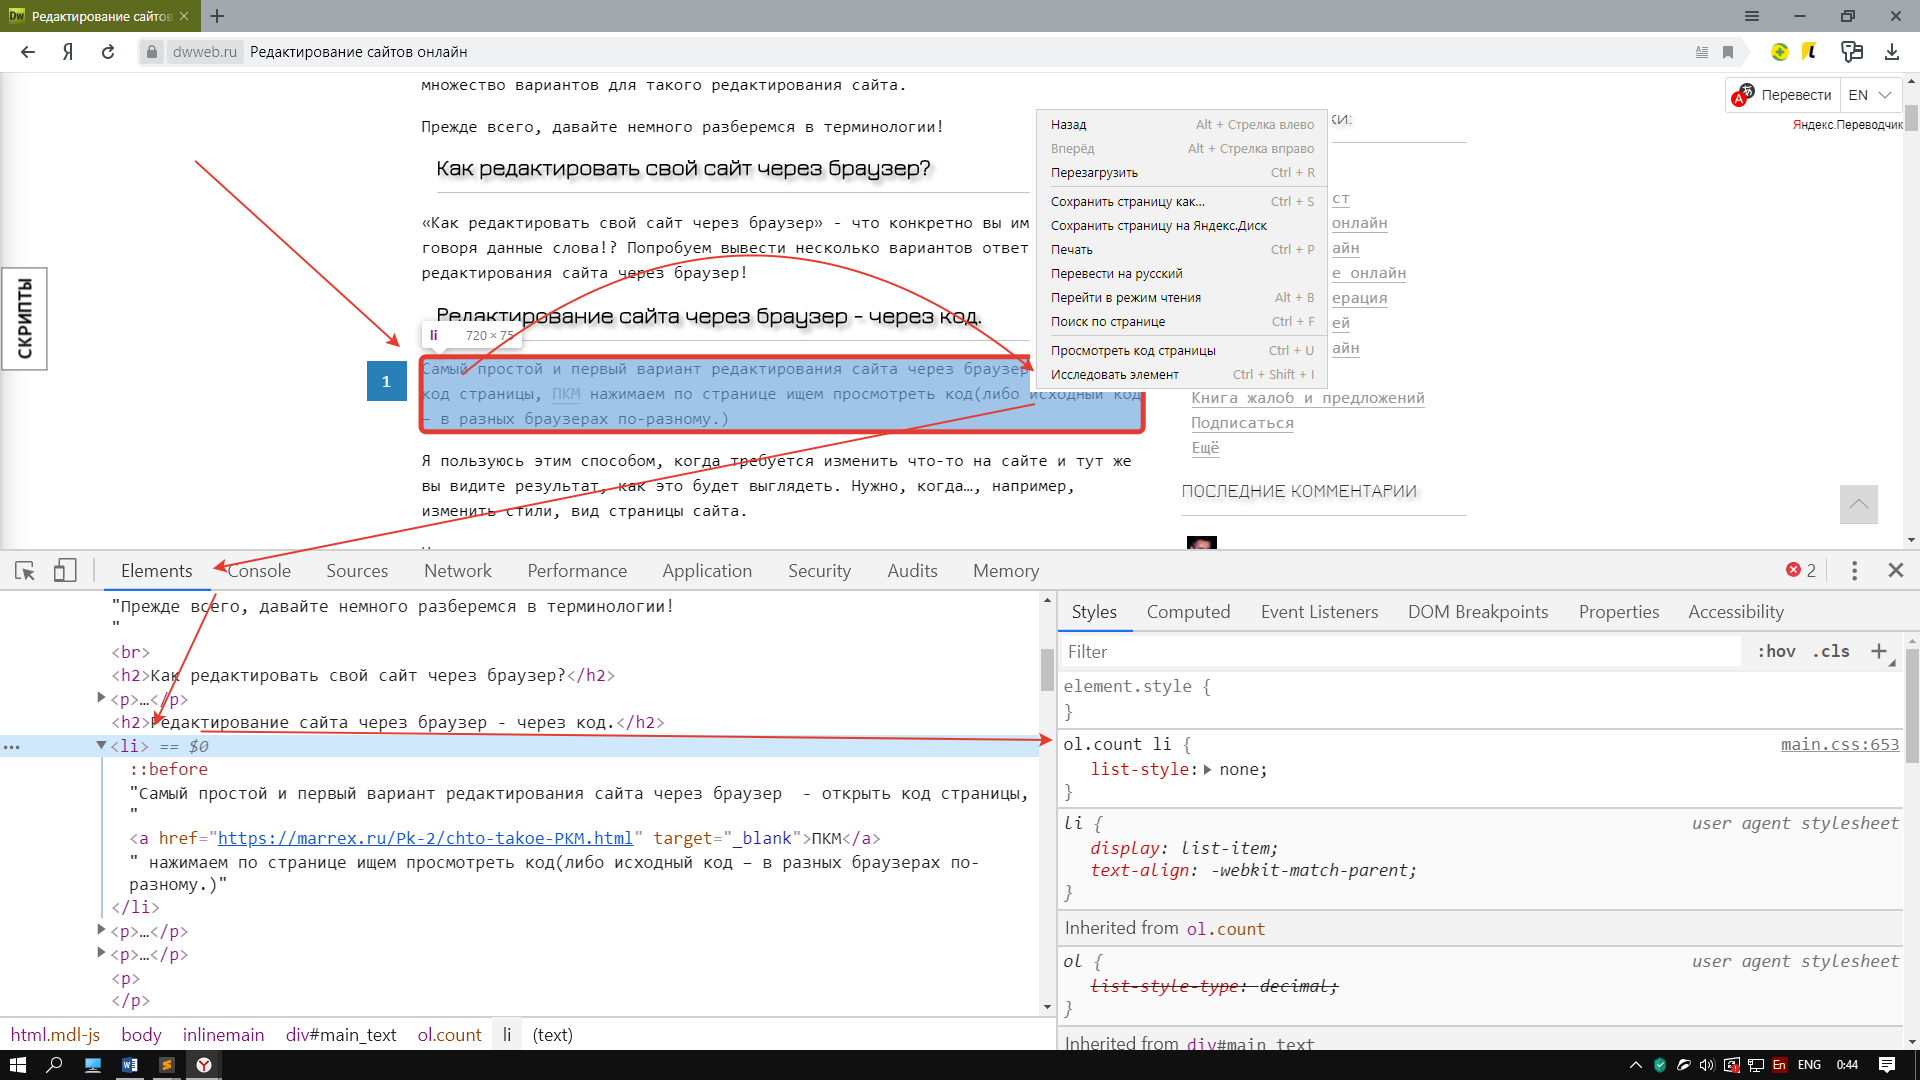 Редактирование сайта через браузер - через код.